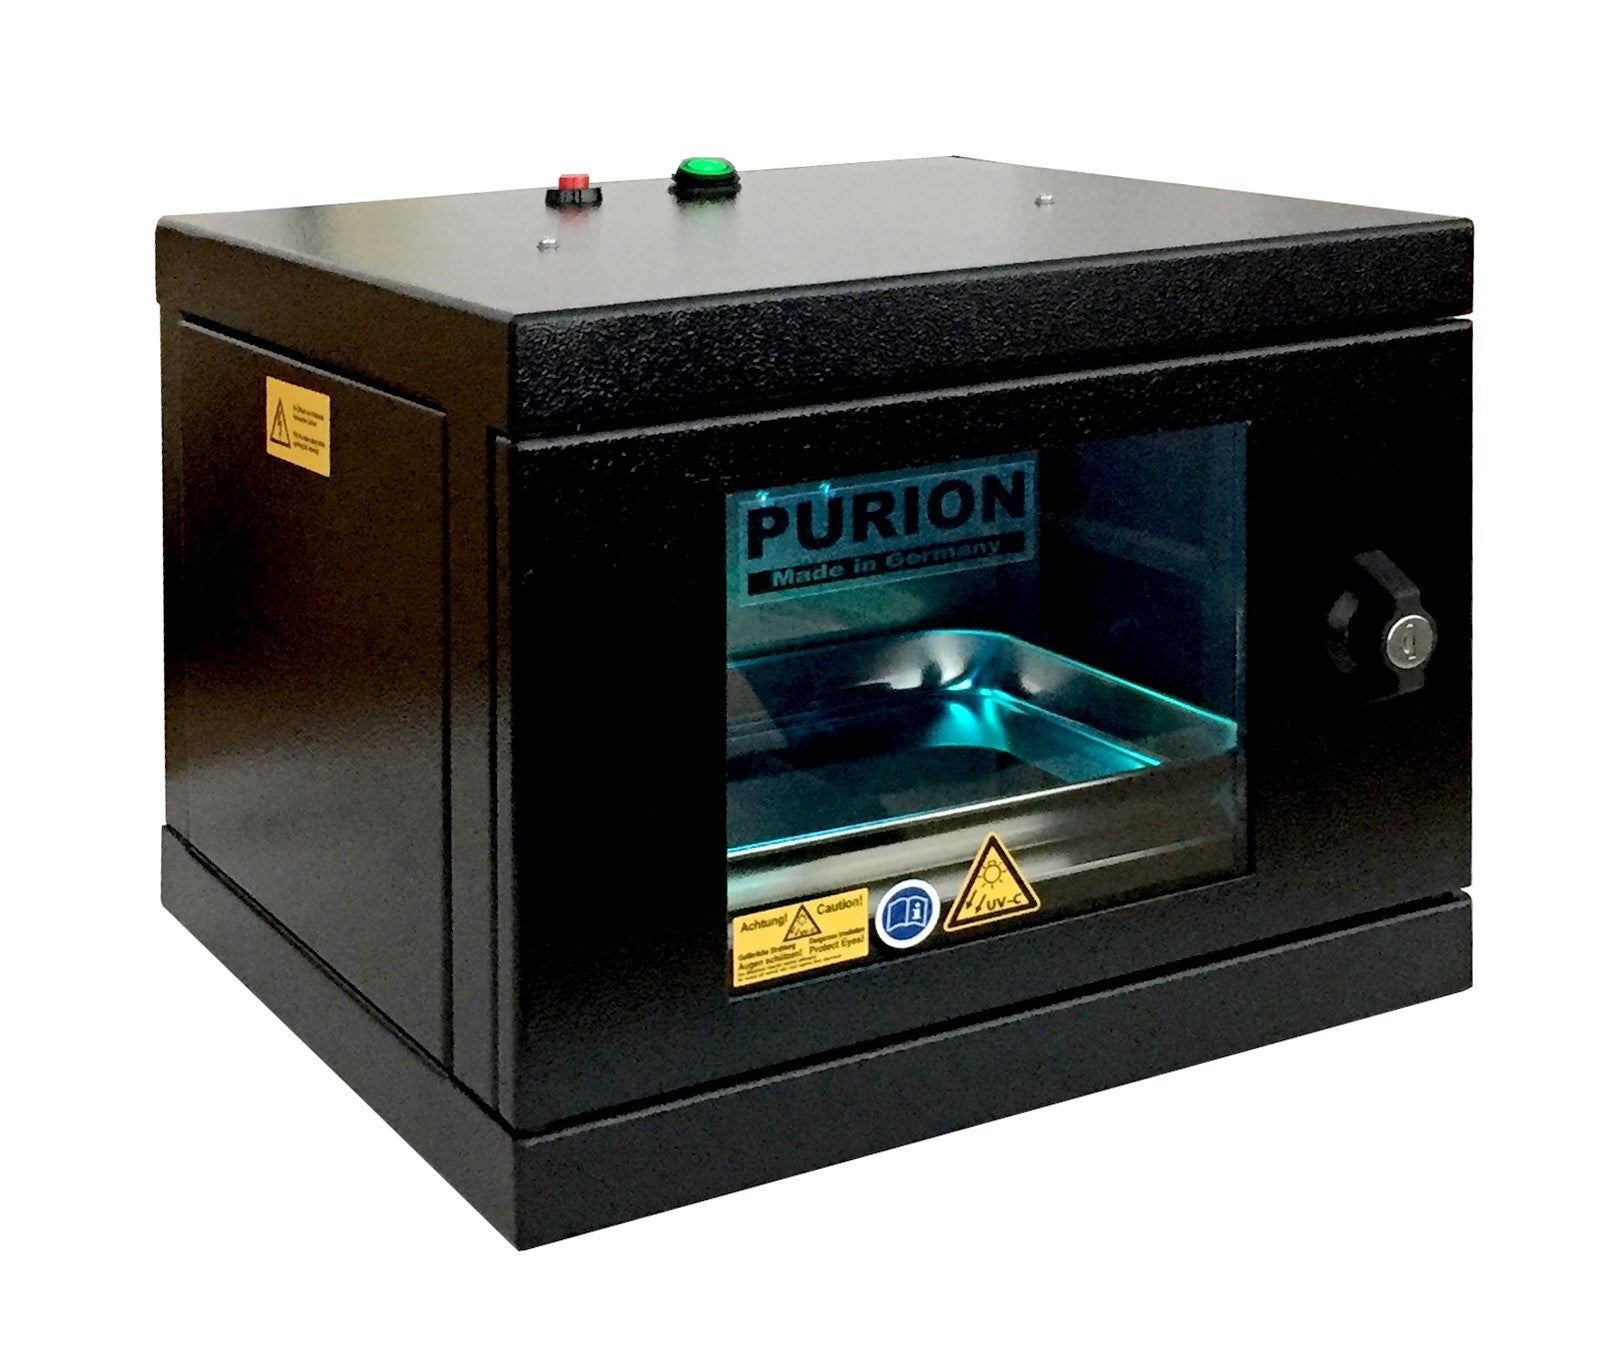 Eine schwarze PURION UVC Box Small Plus-Maschine mit dem Wort Purion darauf, konzipiert für die Desinfektion und Beseitigung von Keimen.